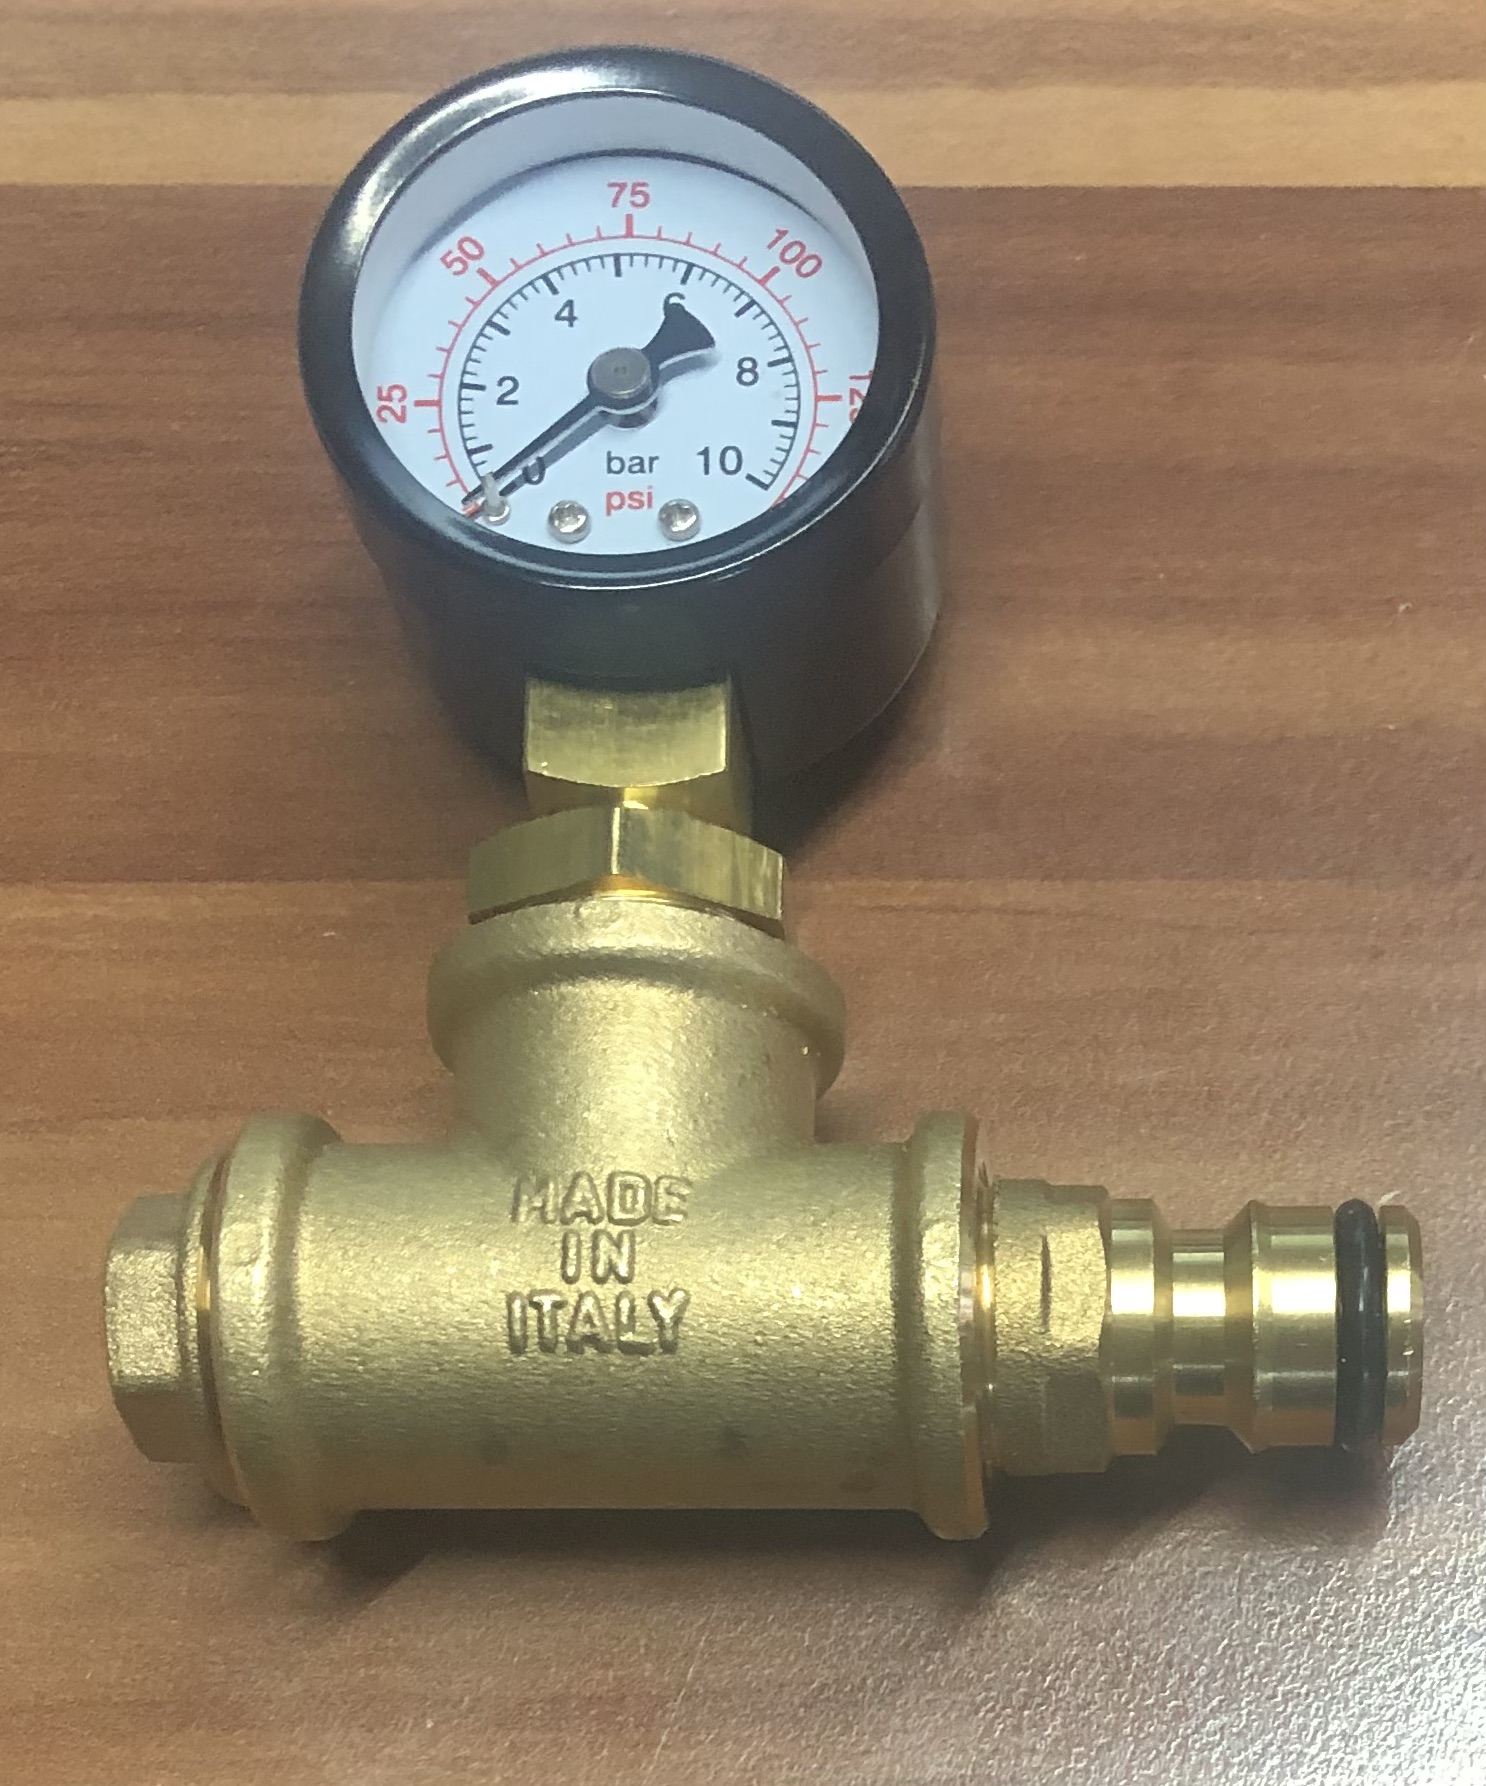 Wasserdruckprüfadapter => Überprüfung Hauswasserdruck (11697#